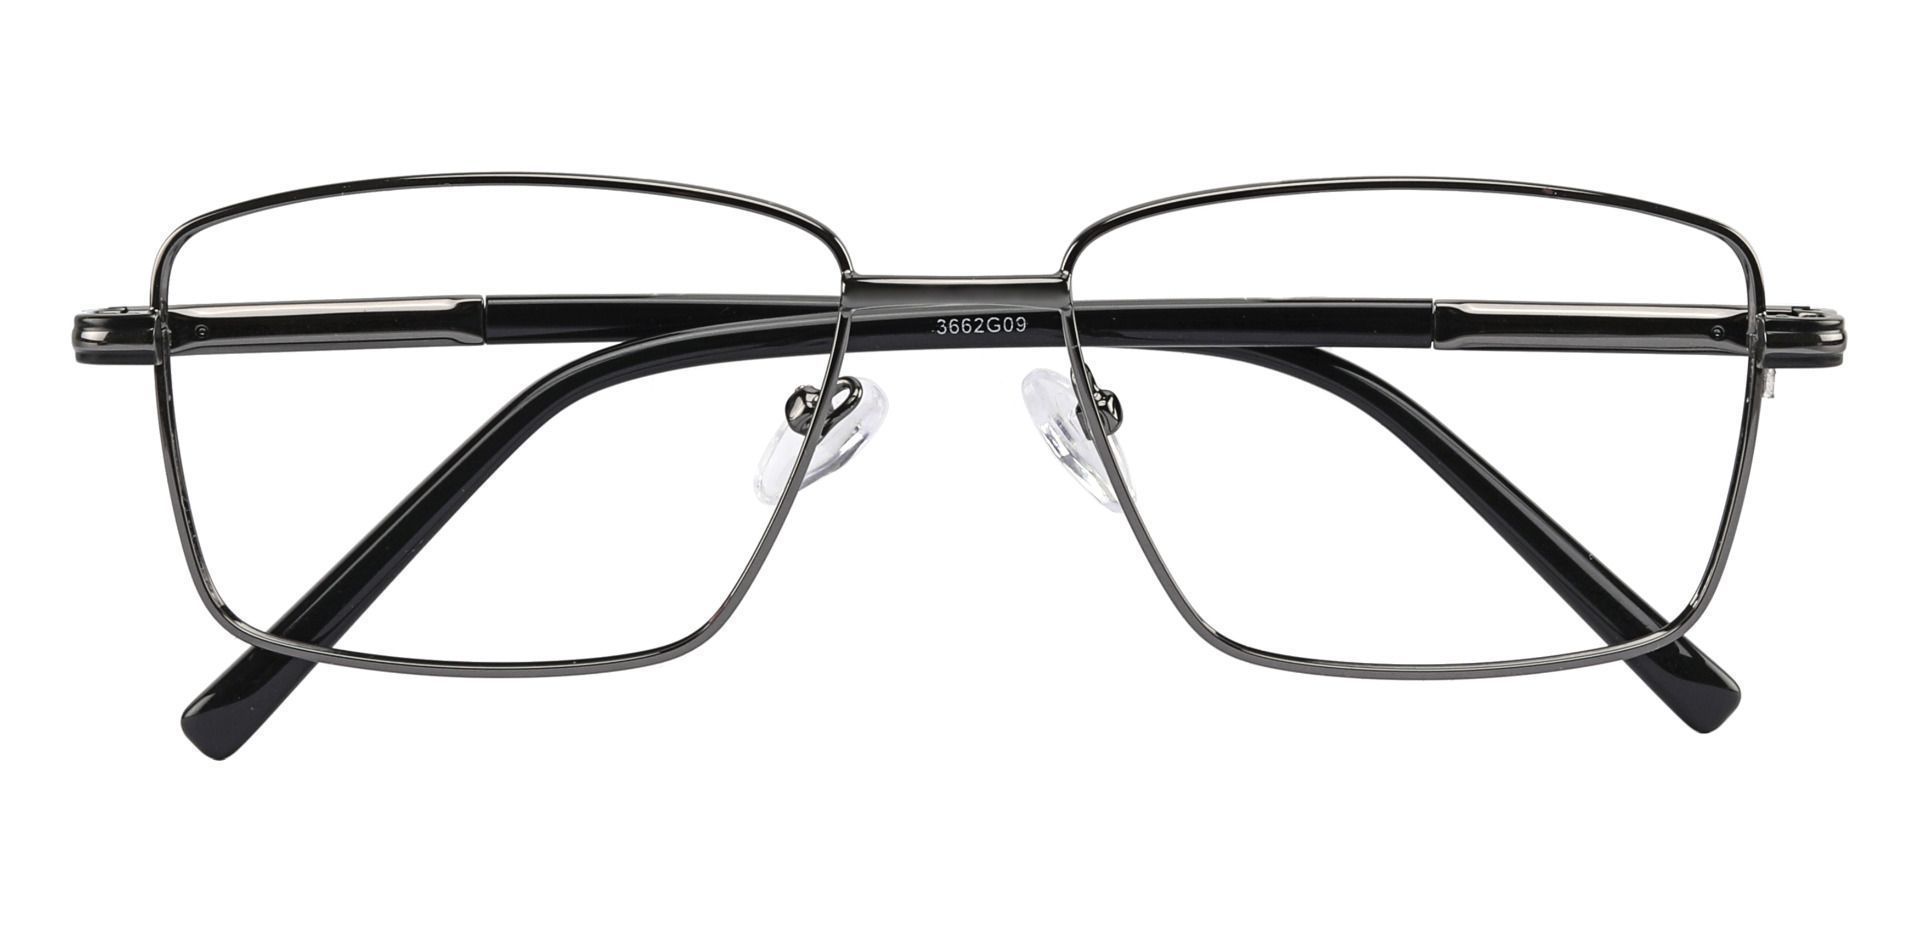 Daniel Rectangle Eyeglasses Frame -    Gunmetal   